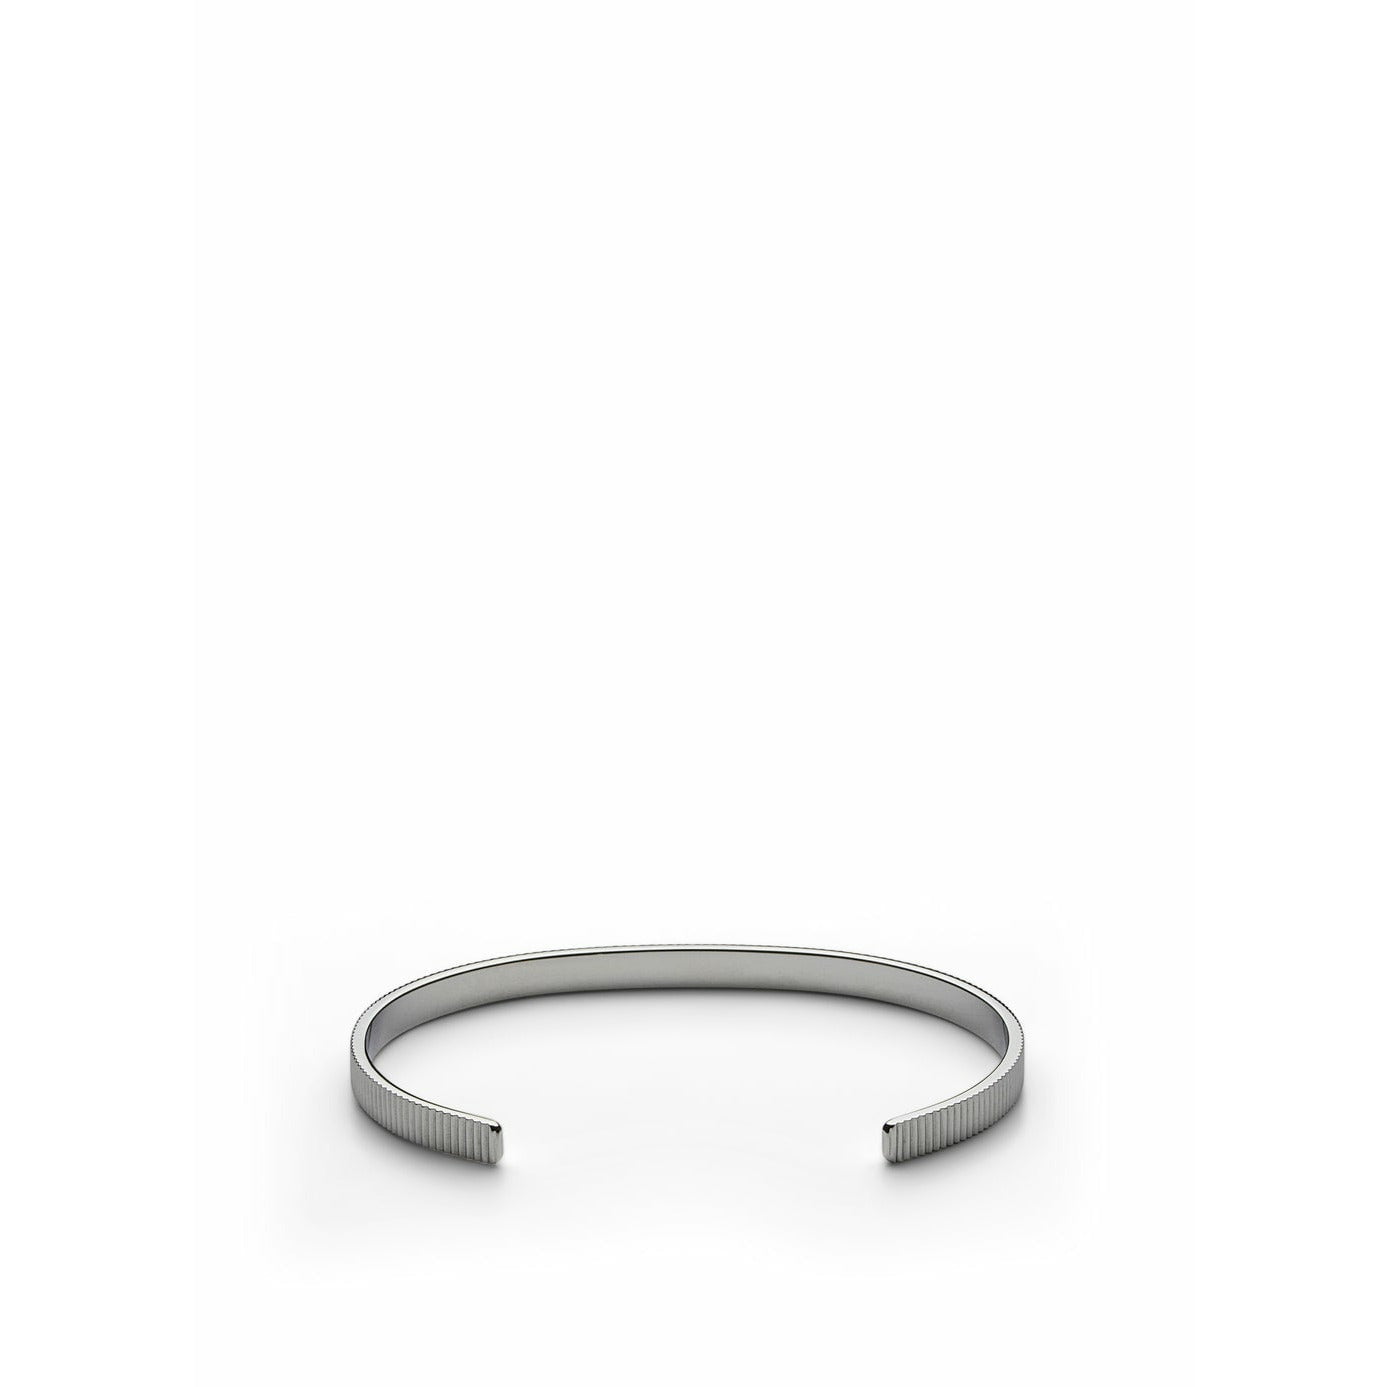 Skultuna geripptes dünnes Armband mittelgroßen Stahl, Ø16,5 cm